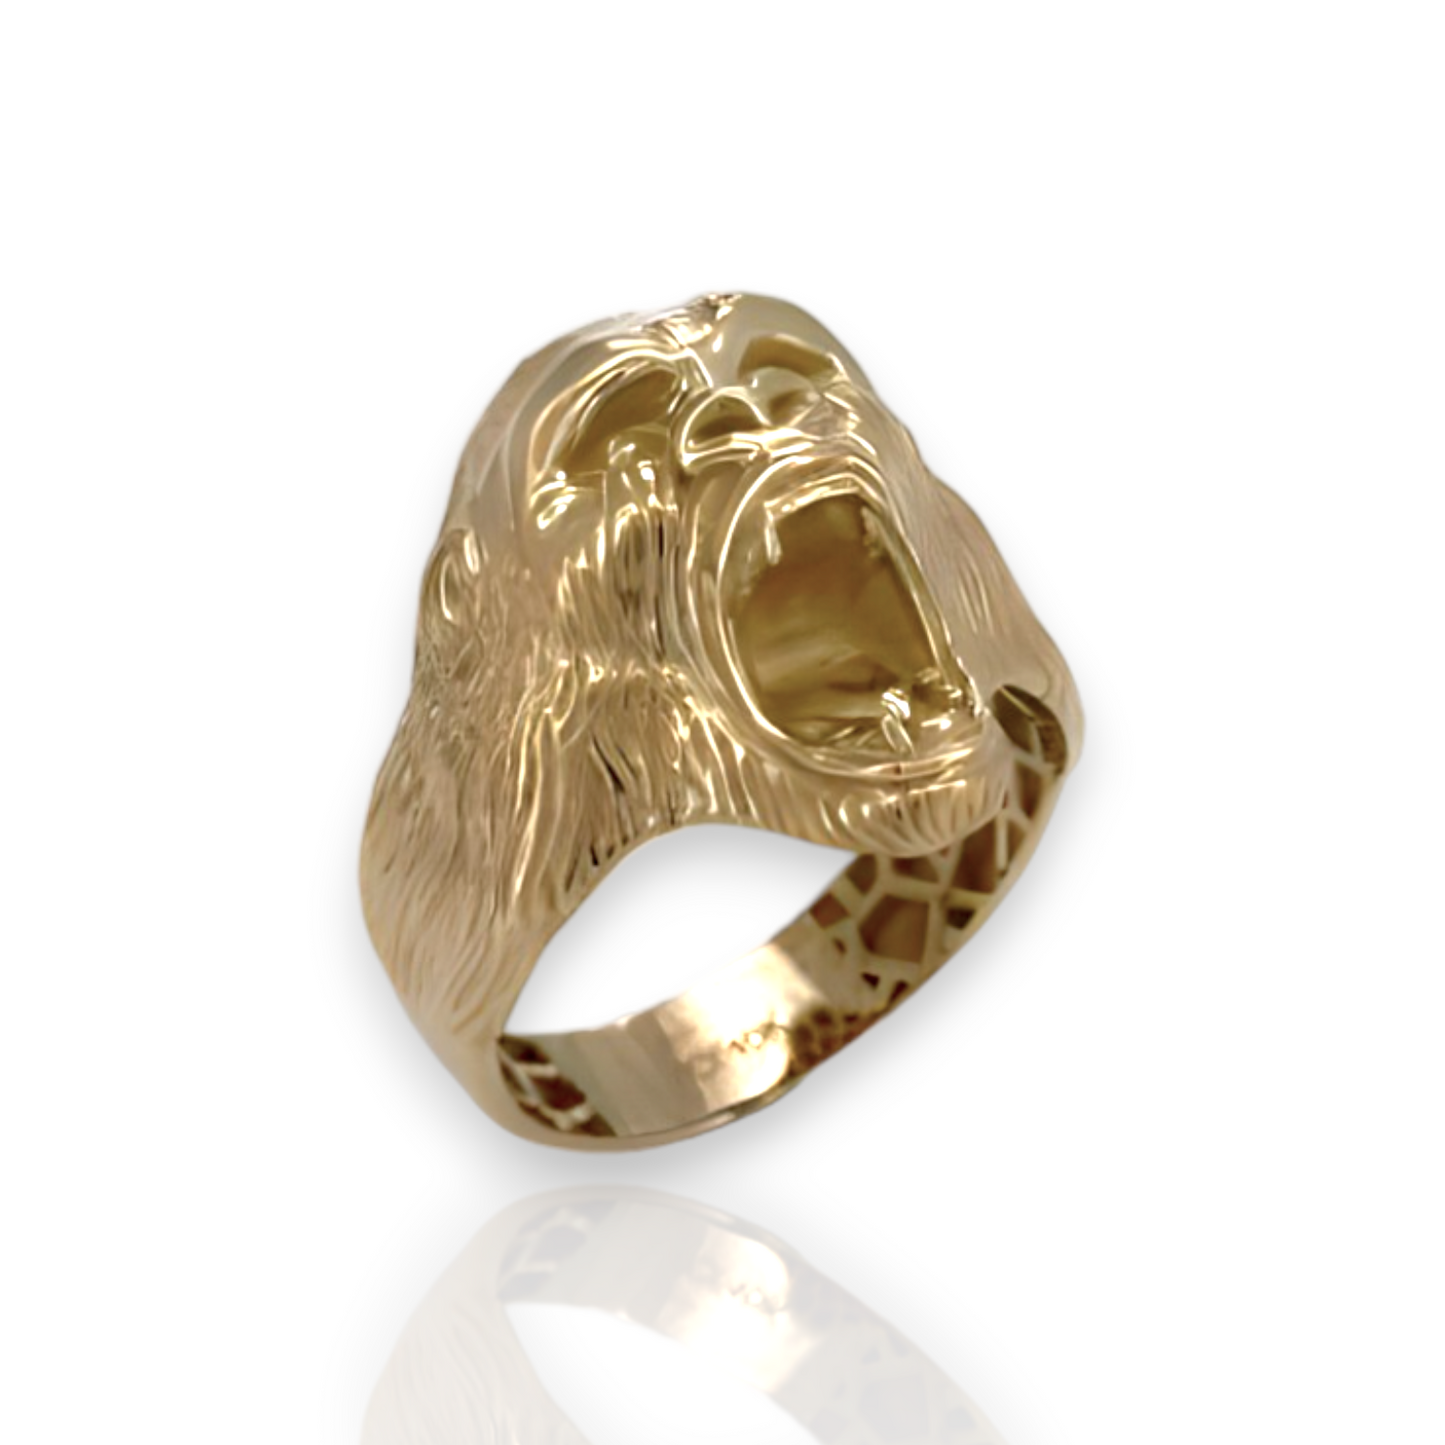 Screaming Gorilla Yellow Gold Ring  - 10K Yellow Gold